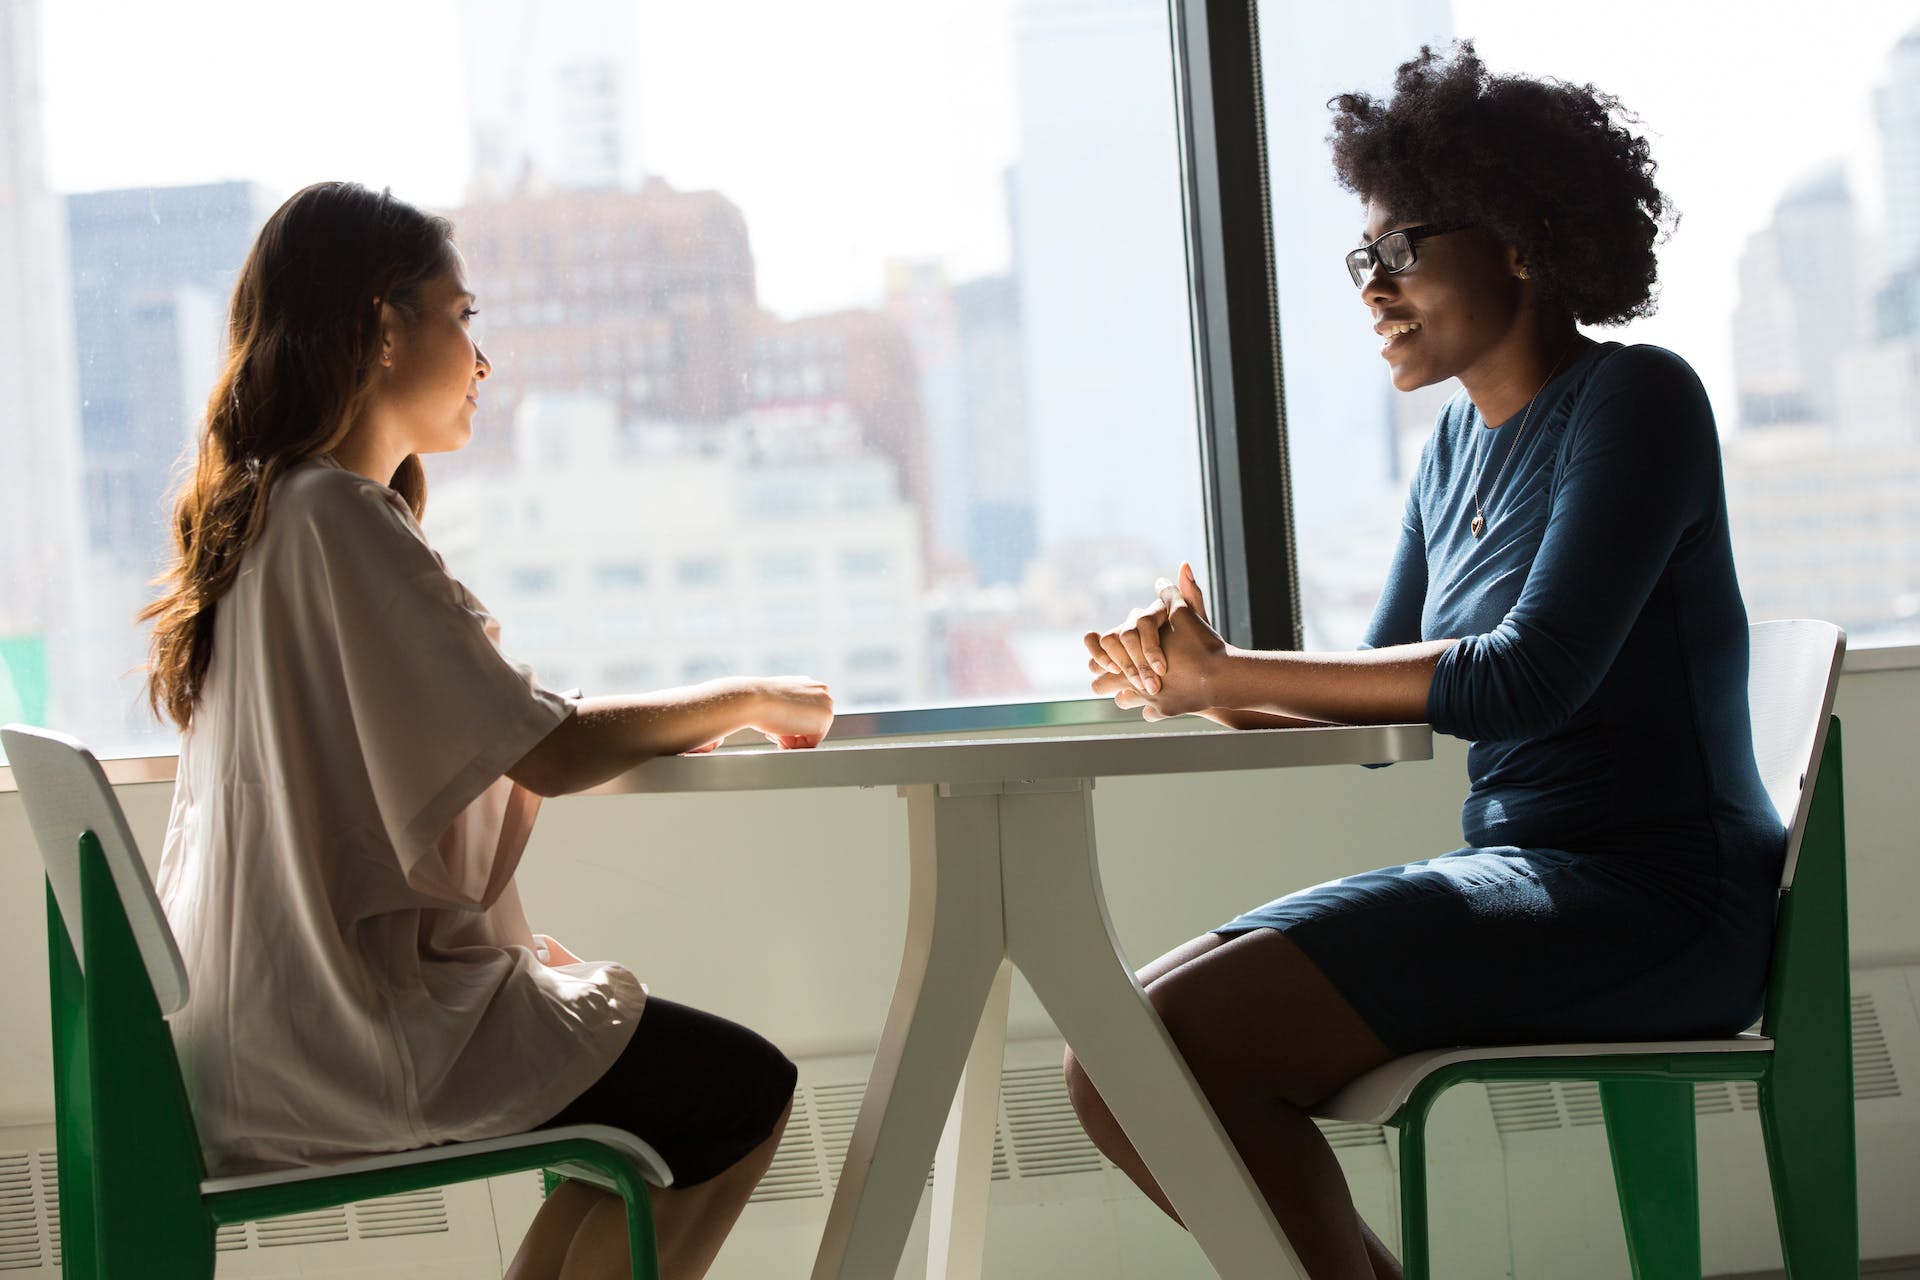 Two women talking in an office | Source: Pexels